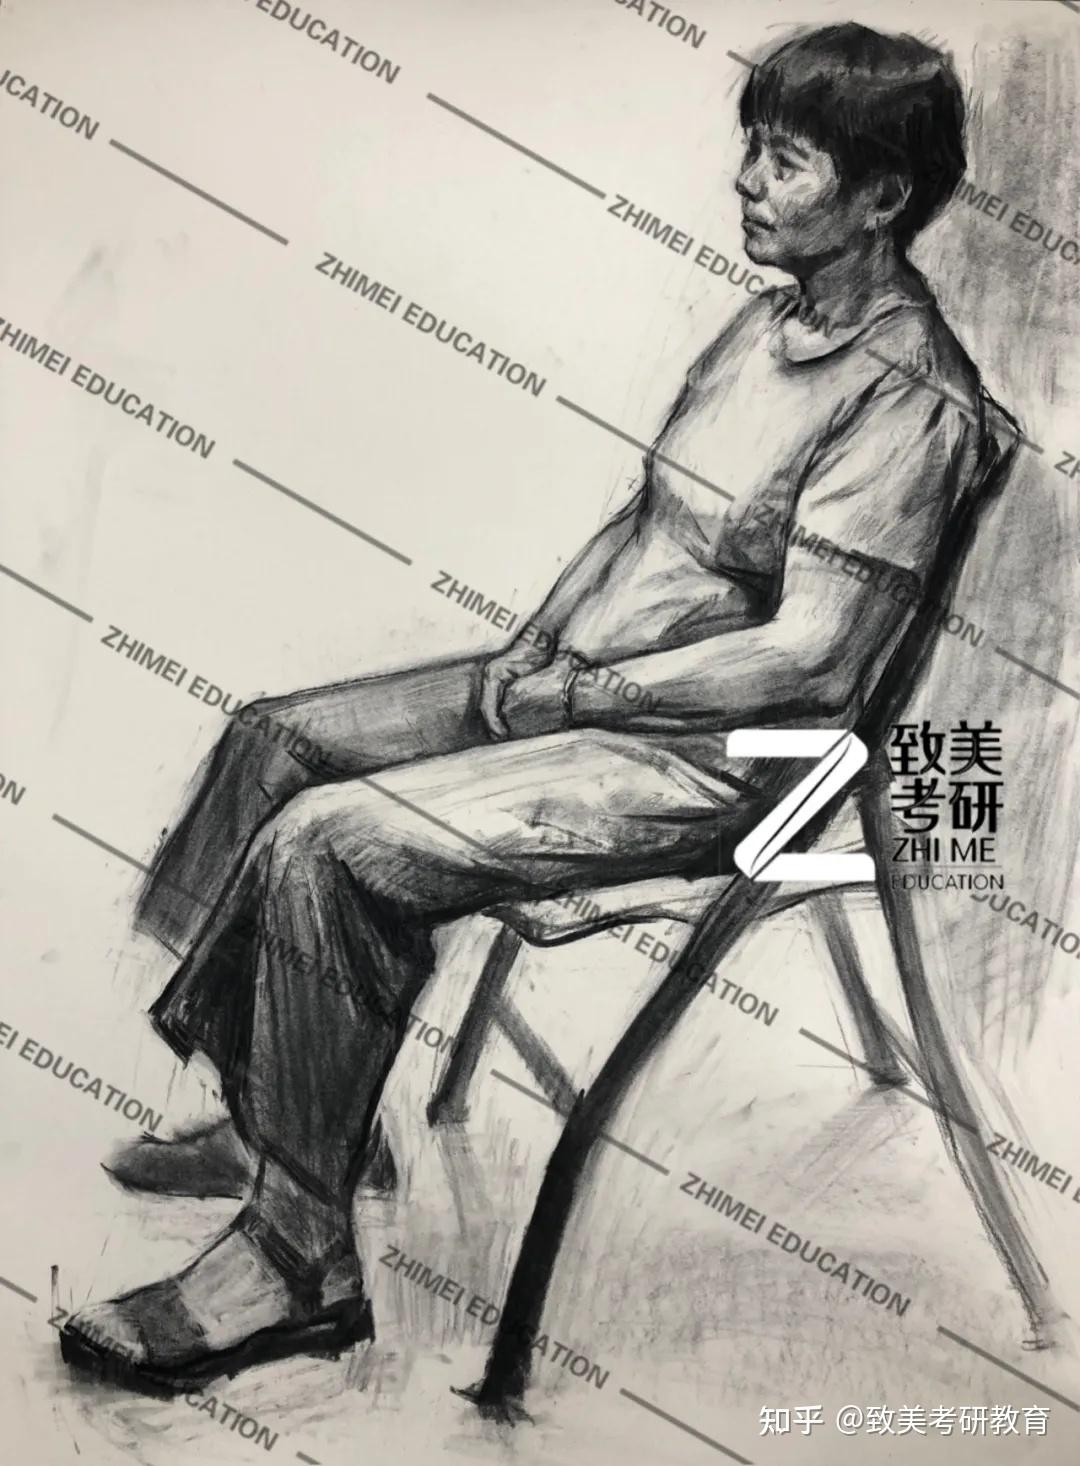 中国美术学院2021届高分卷作品赏析 - 武汉北艺画室